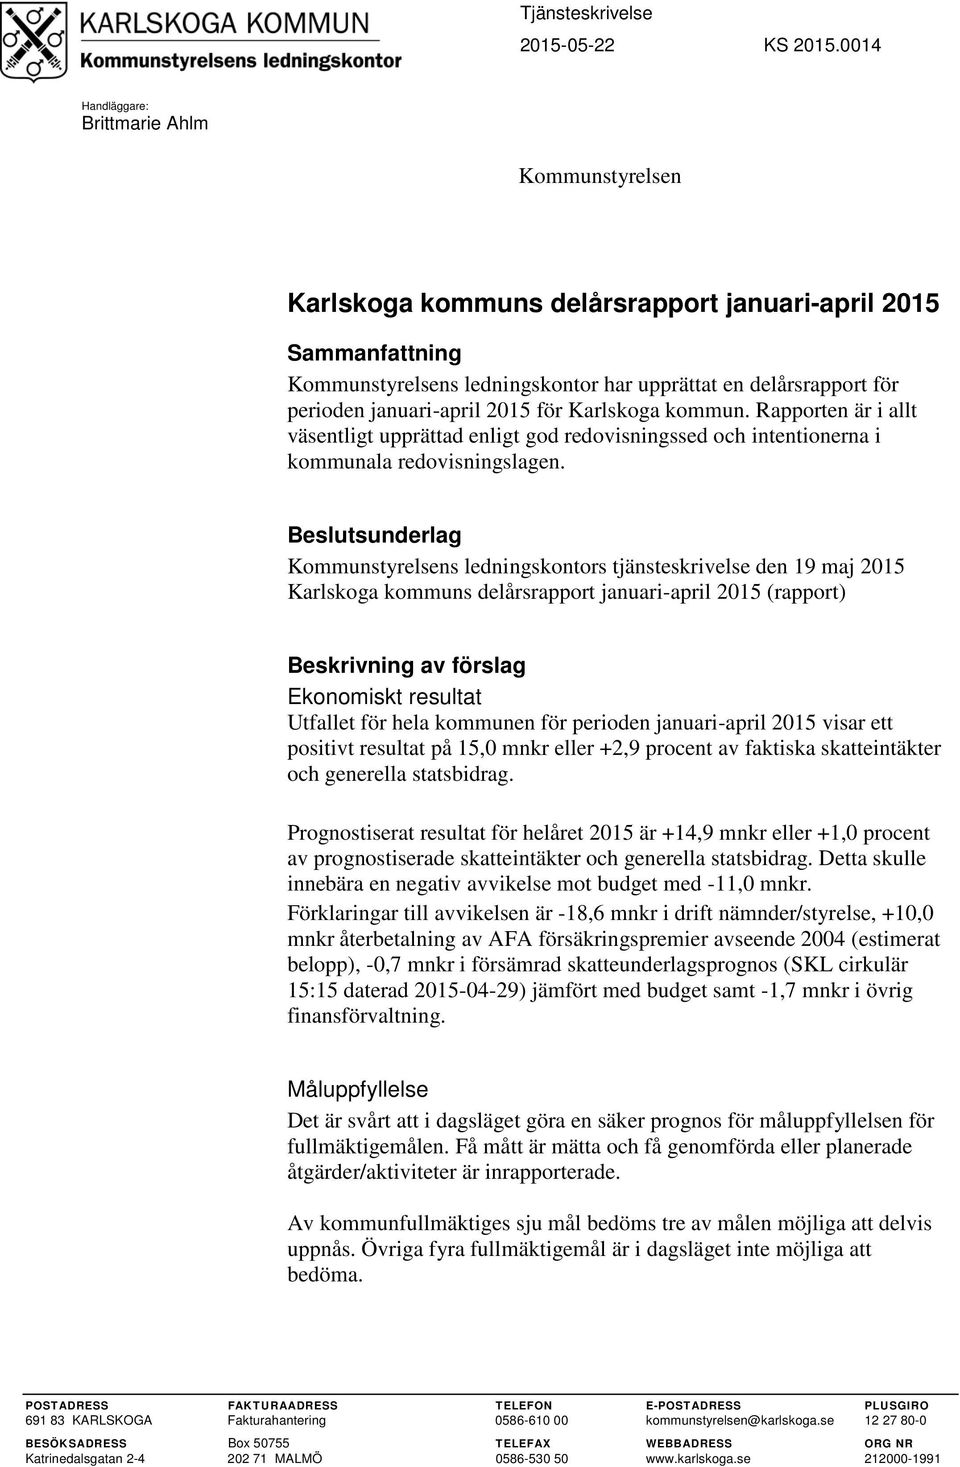 januari-april för Karlskoga kommun. Rapporten är i allt väsentligt upprättad enligt god redovisningssed och intentionerna i kommunala redovisningslagen.